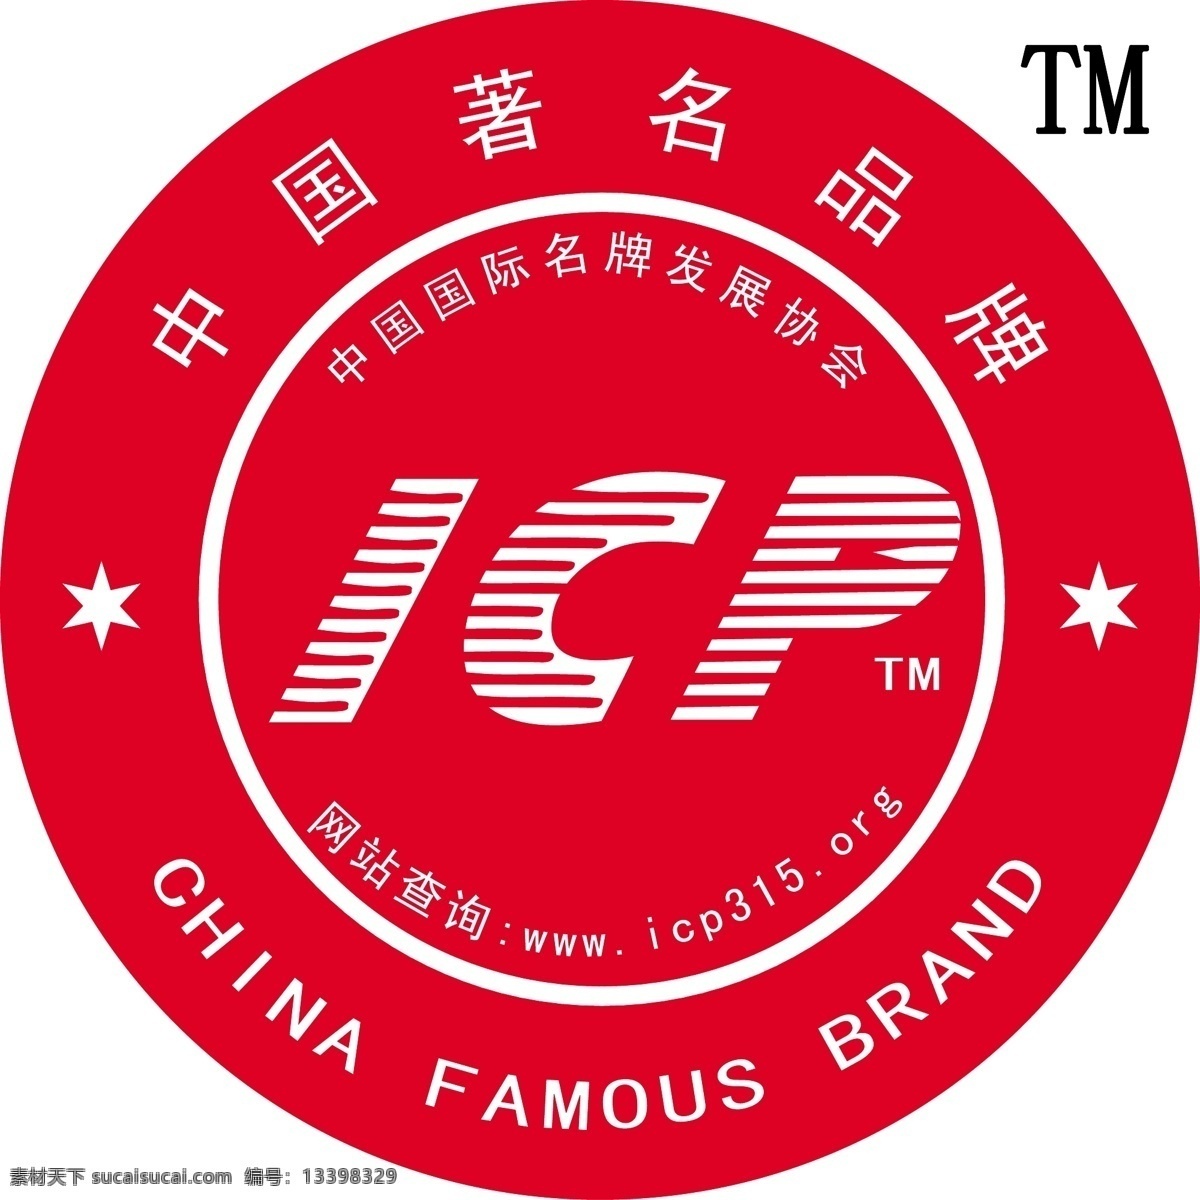 中国 著名 品牌 icp 标 标识标志图标 矢量